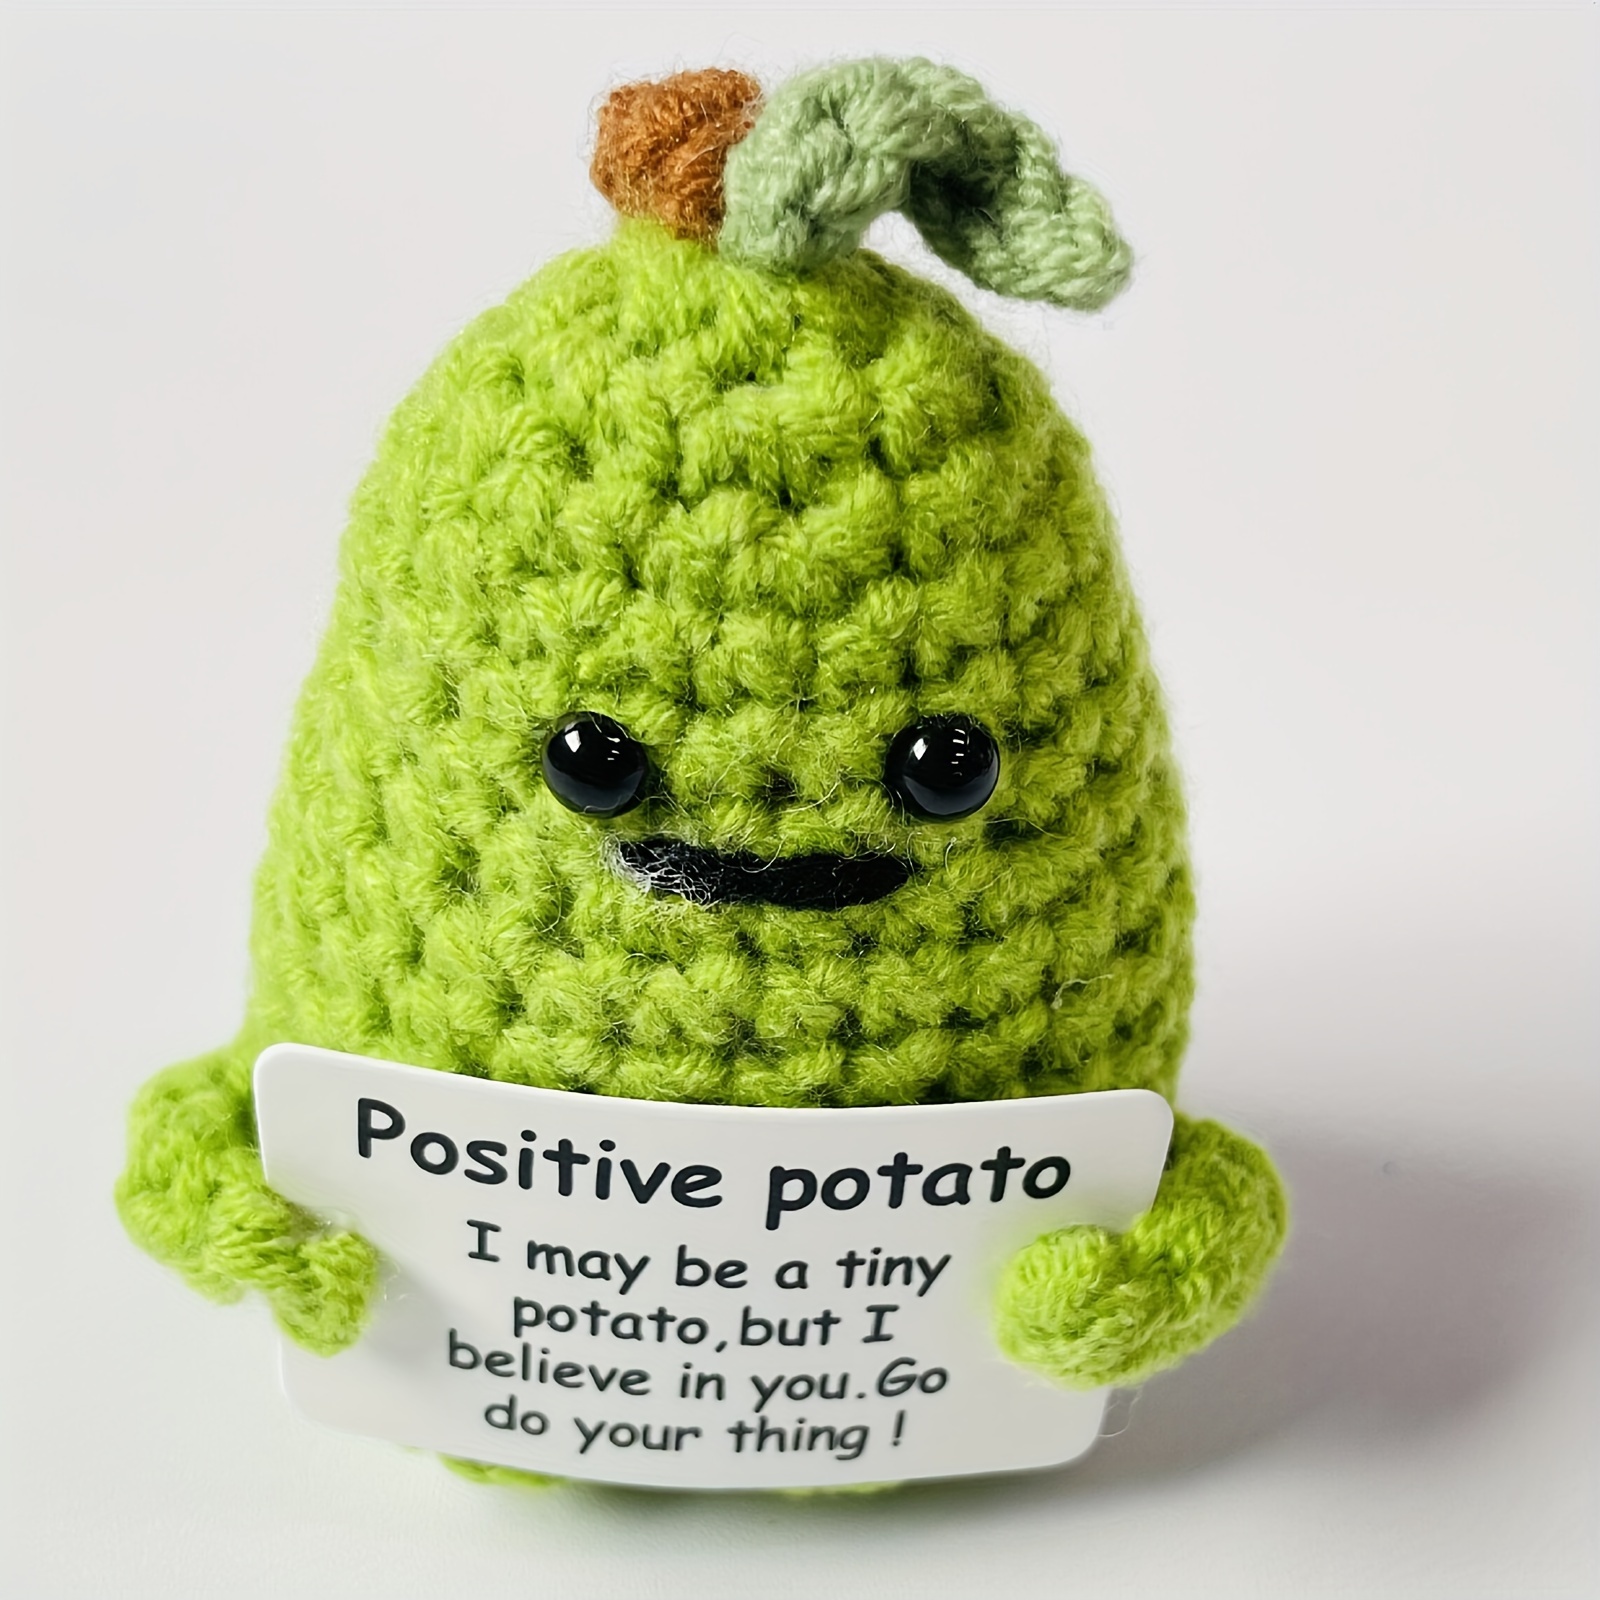  Qyqkfly Funny Positive Life Potato